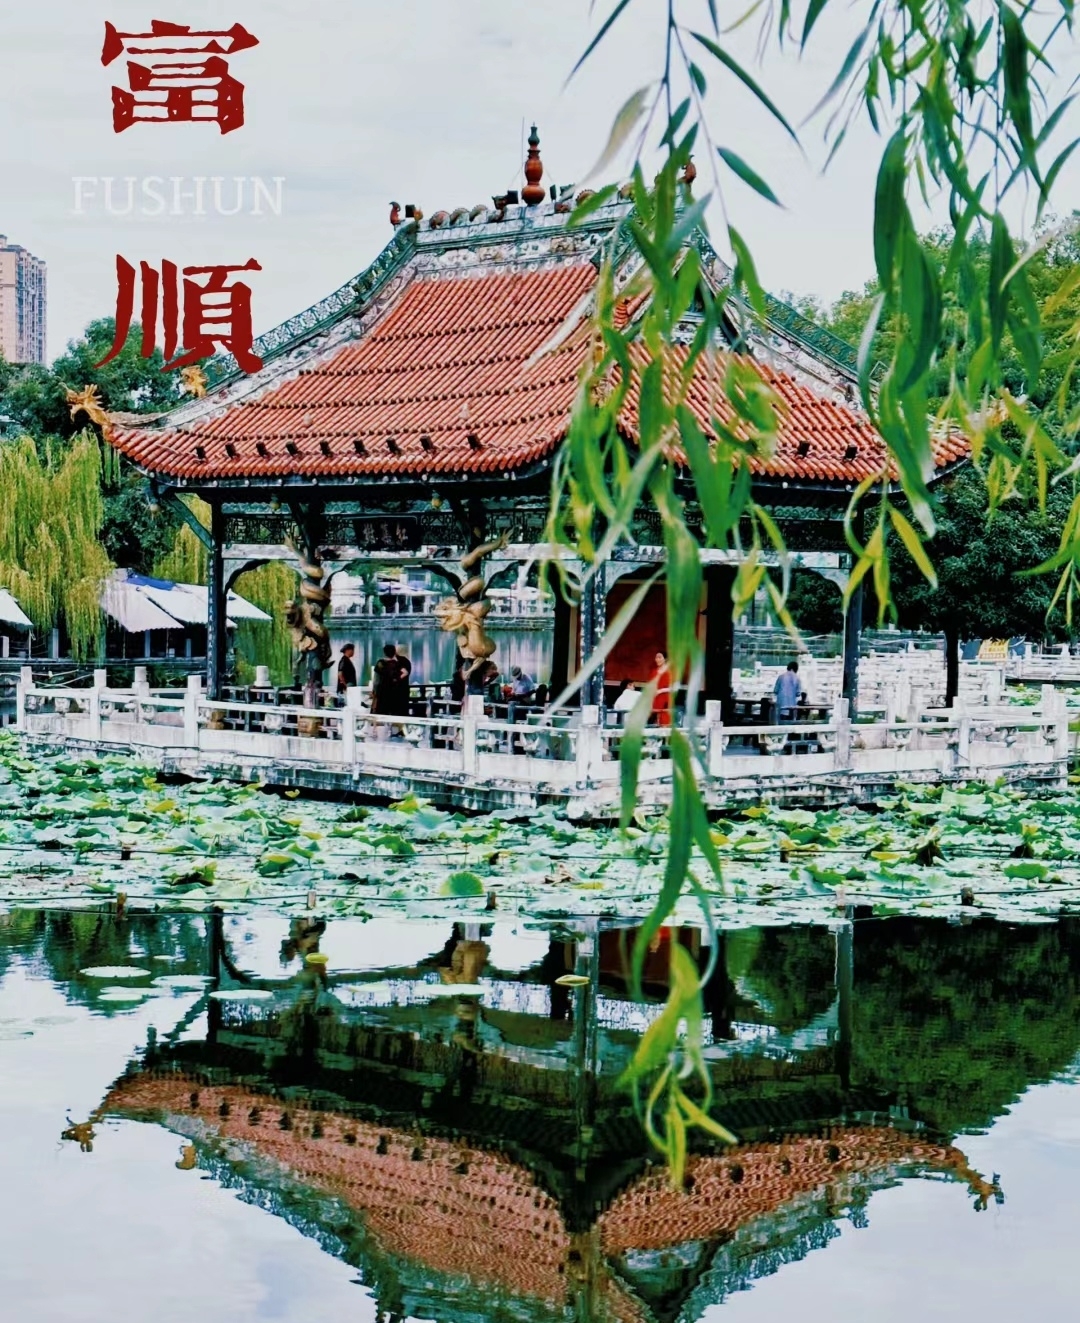 四川富顺是一个历史悠久且充满魅力的县城，以下是一些旅行攻略供您参考：  富顺文庙：位于富顺县城中心，